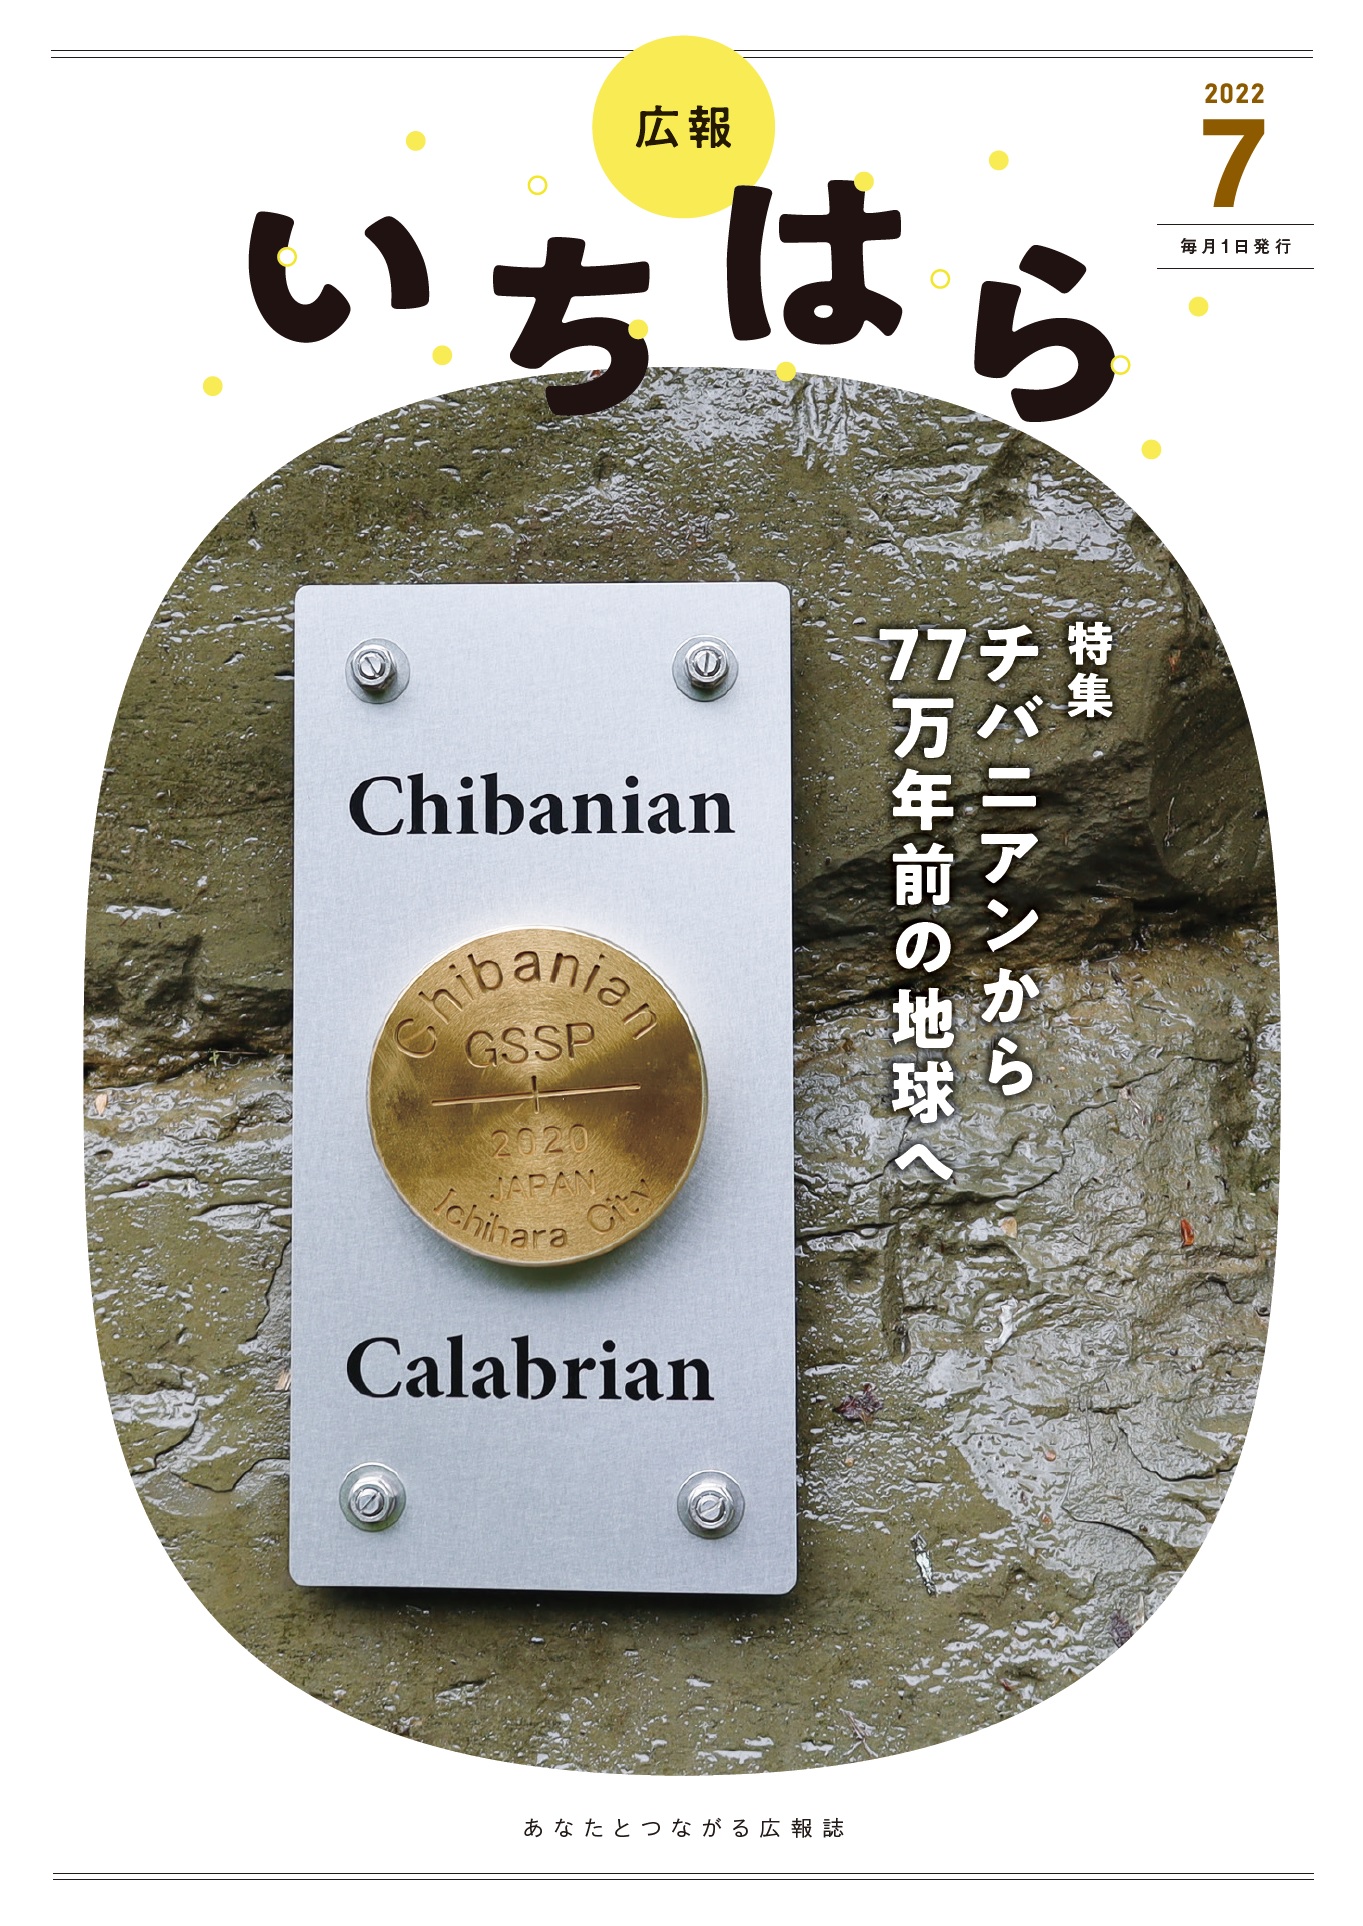 【お得品】チバニアン　GSSP2020 Chibanian ピンズ・ピンバッジ・缶バッジ